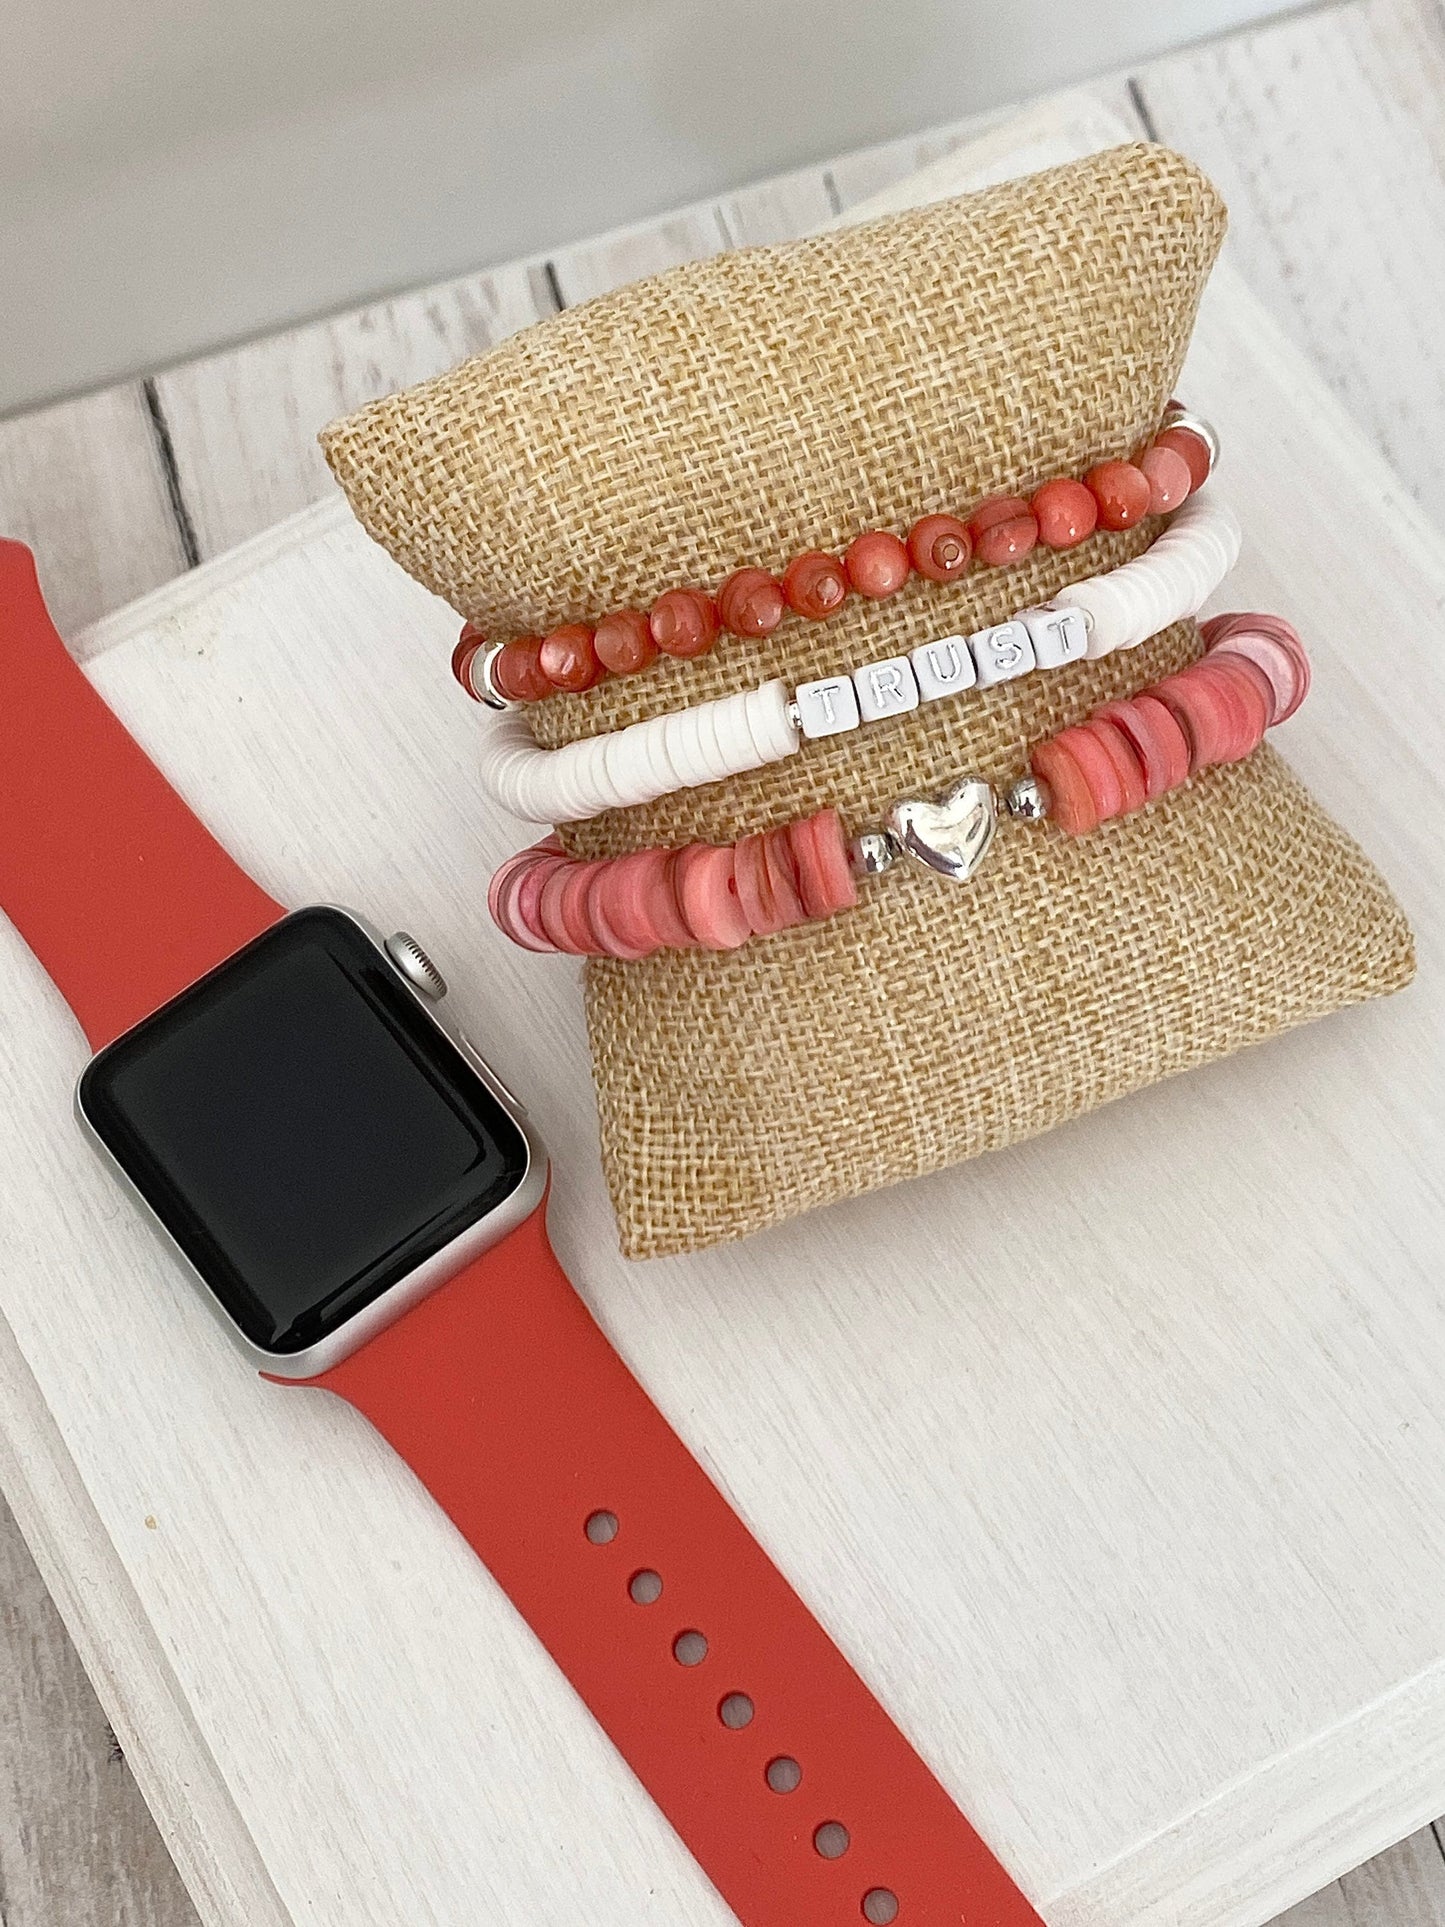 Coral and White Stack Bracelets/Stretch Bracelets/Layering Bracelets/Boho Jewelry/Handmade Gemstone Bracelets/Matching Set